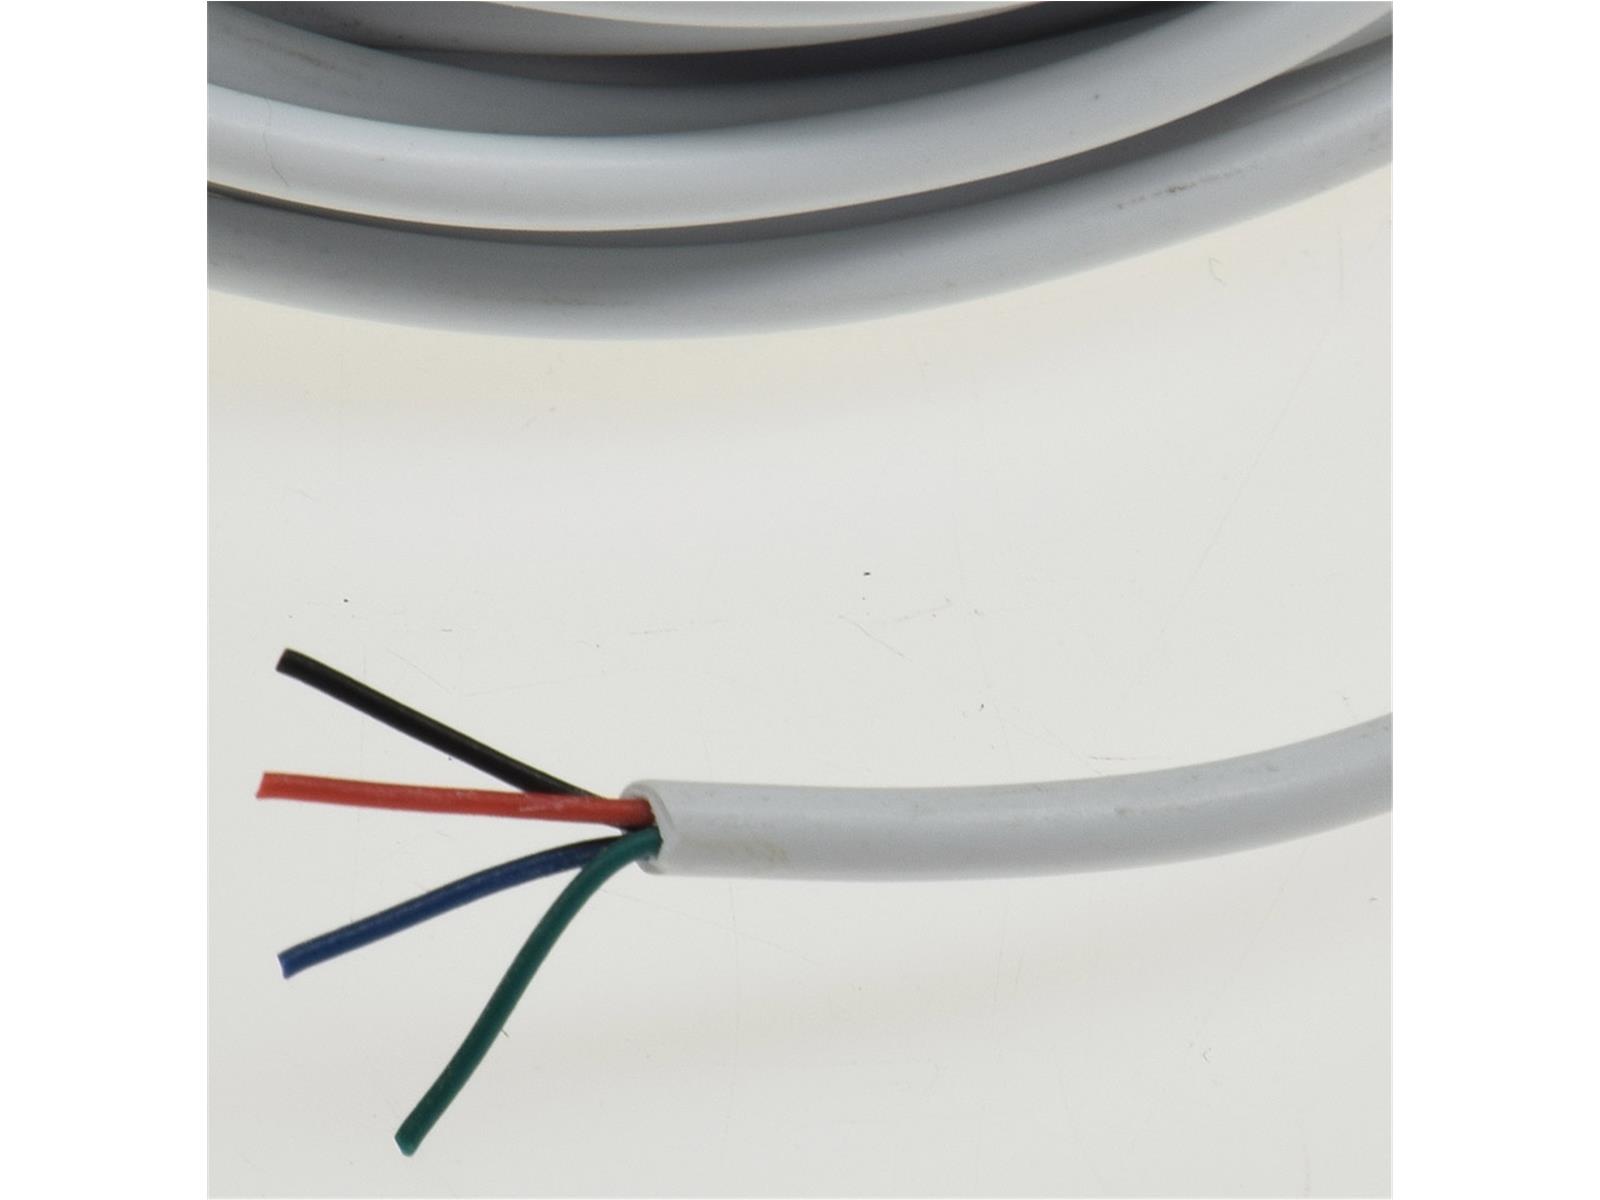 RGB LED-Stripes Kabel 10m10m, 4 adrig-rot-grün-blau-schwarz, rund